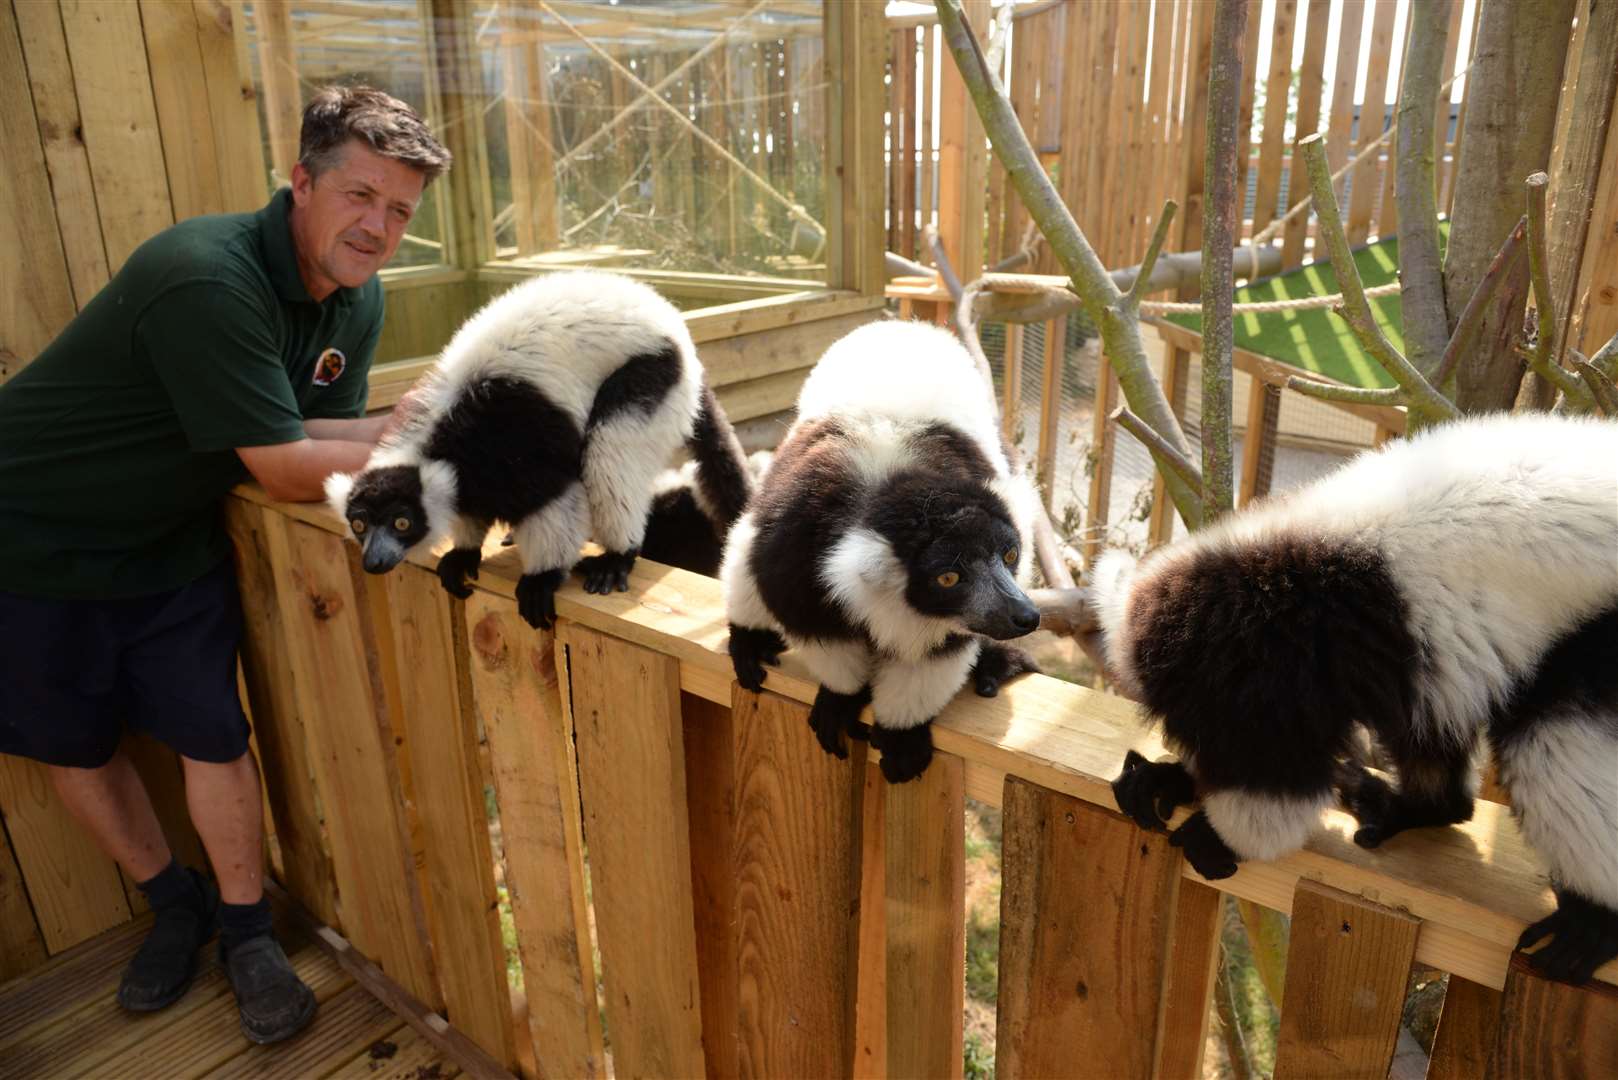 The Lemurs at the Fenn Bell Inn. Picture: Chris Davey